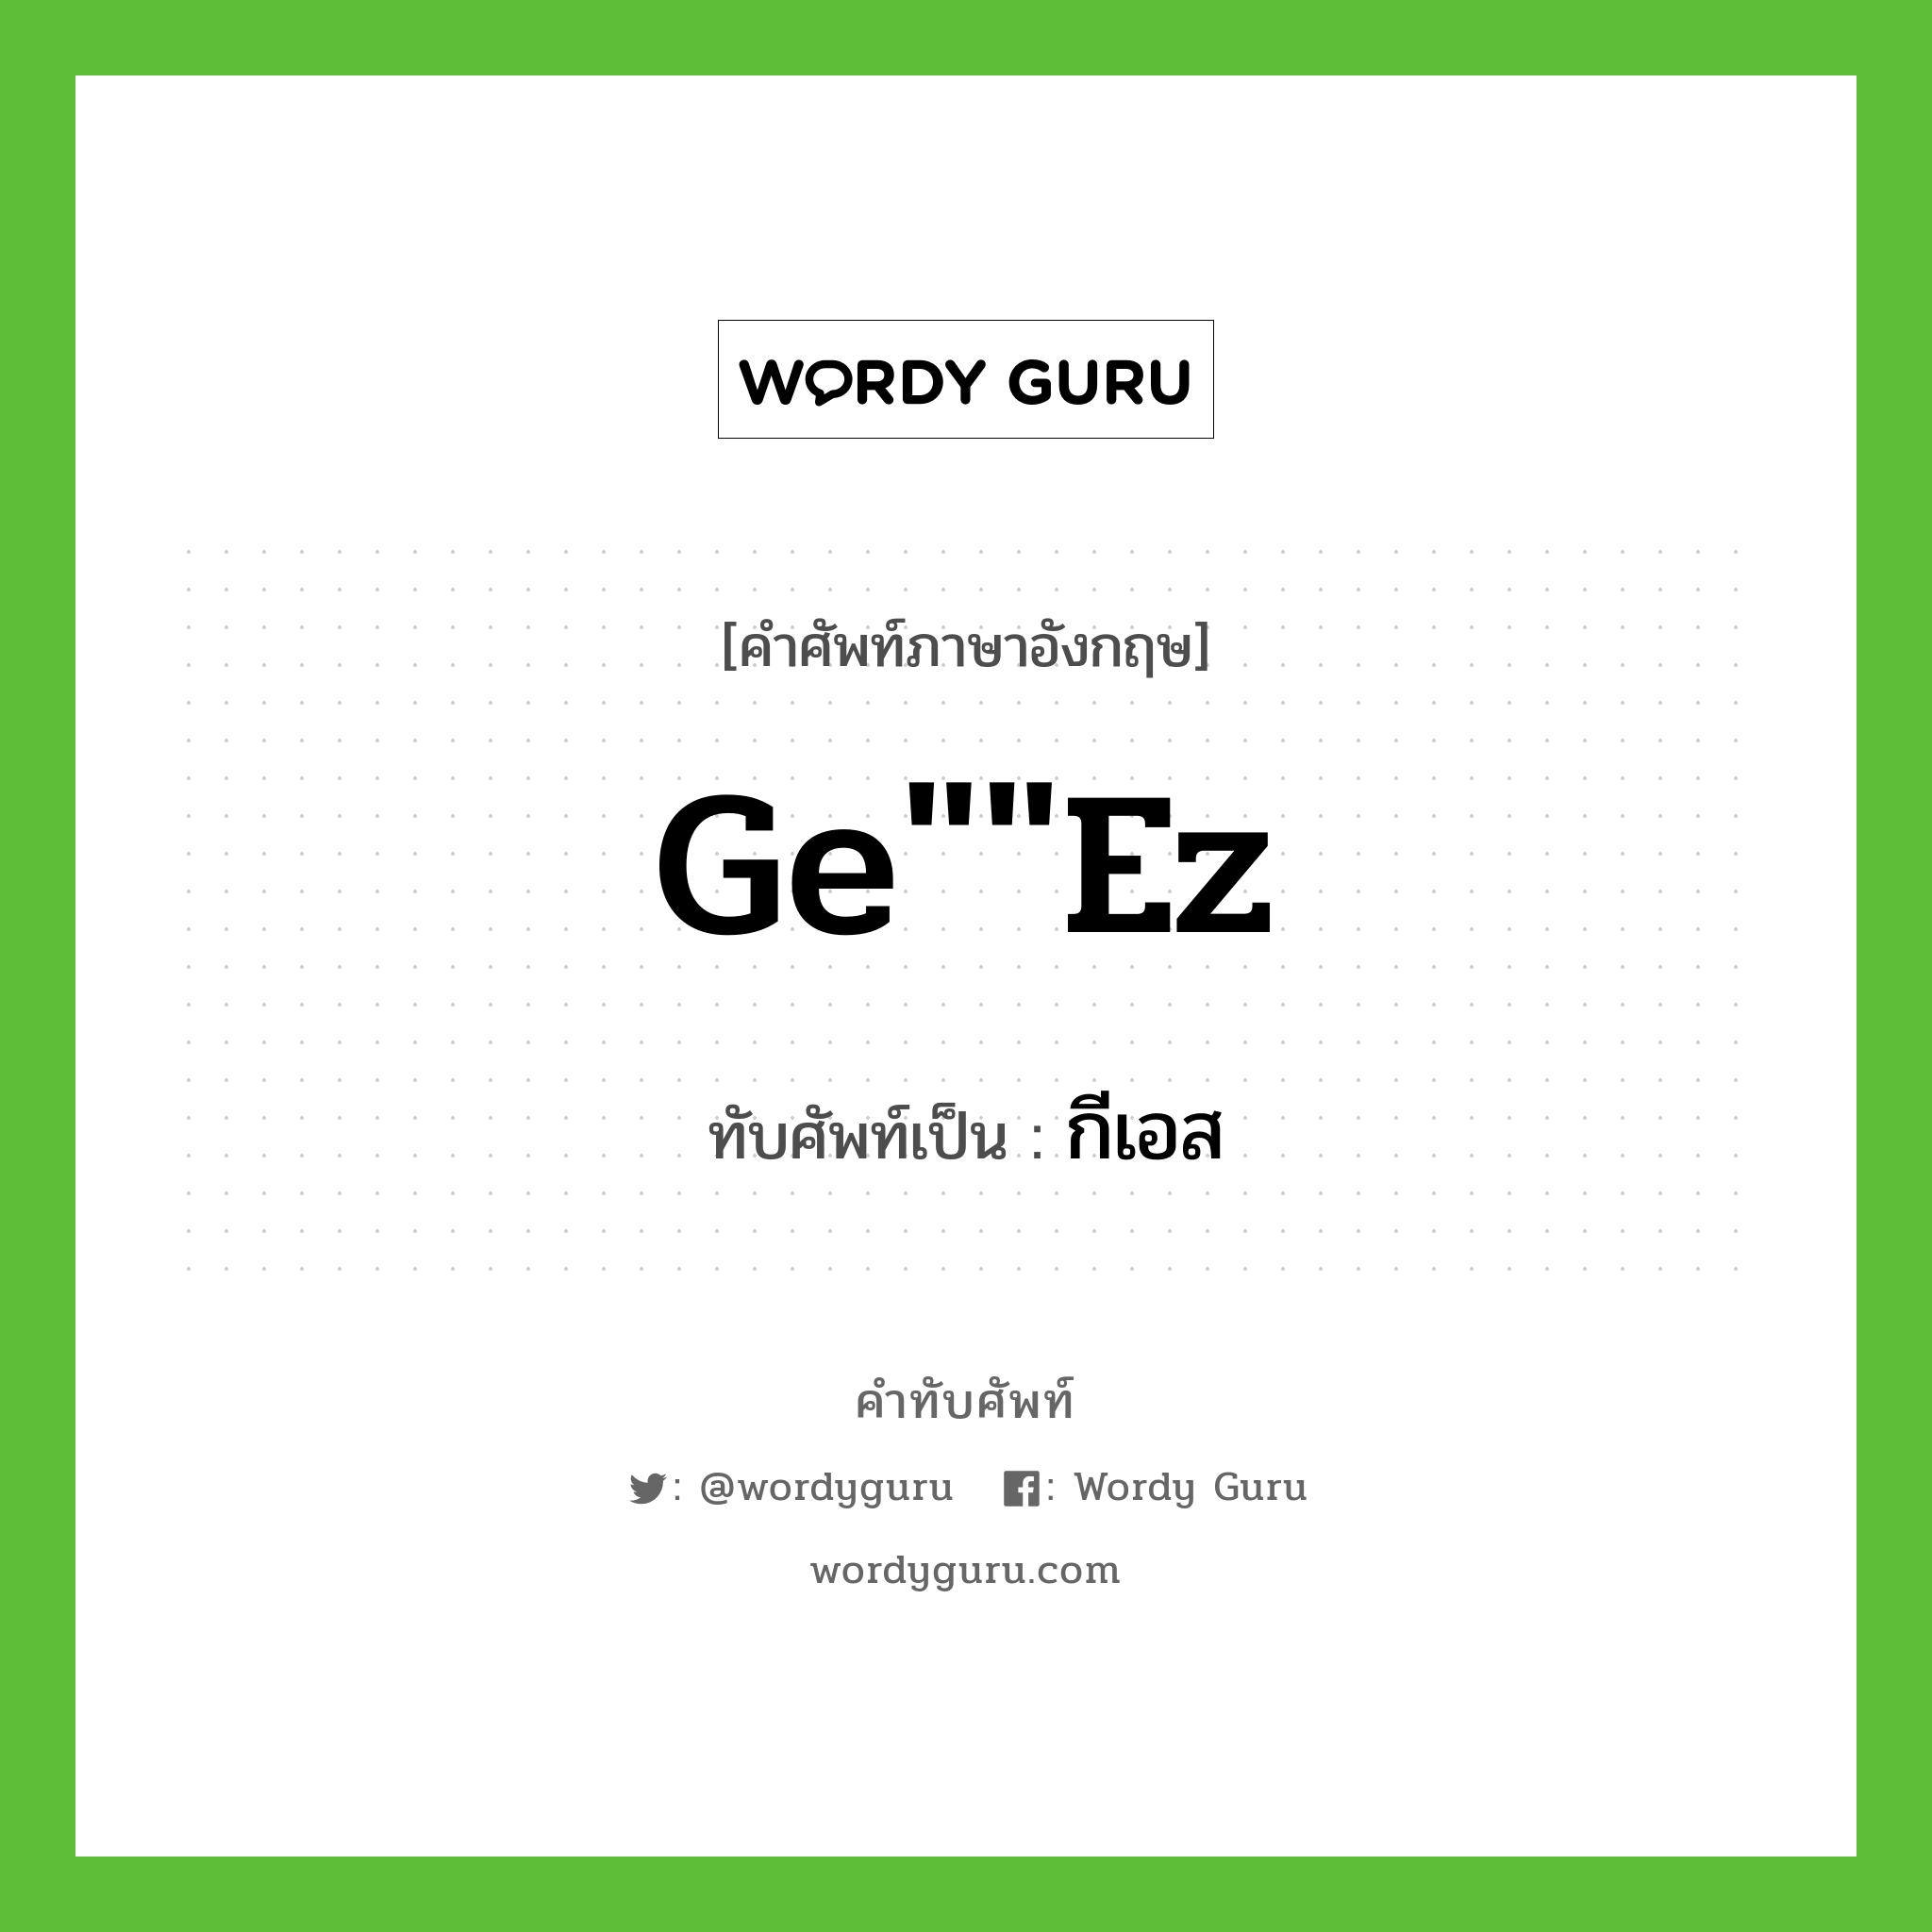 Ge""ez เขียนเป็นคำไทยว่าอะไร?, คำศัพท์ภาษาอังกฤษ Ge""ez ทับศัพท์เป็น กีเอส